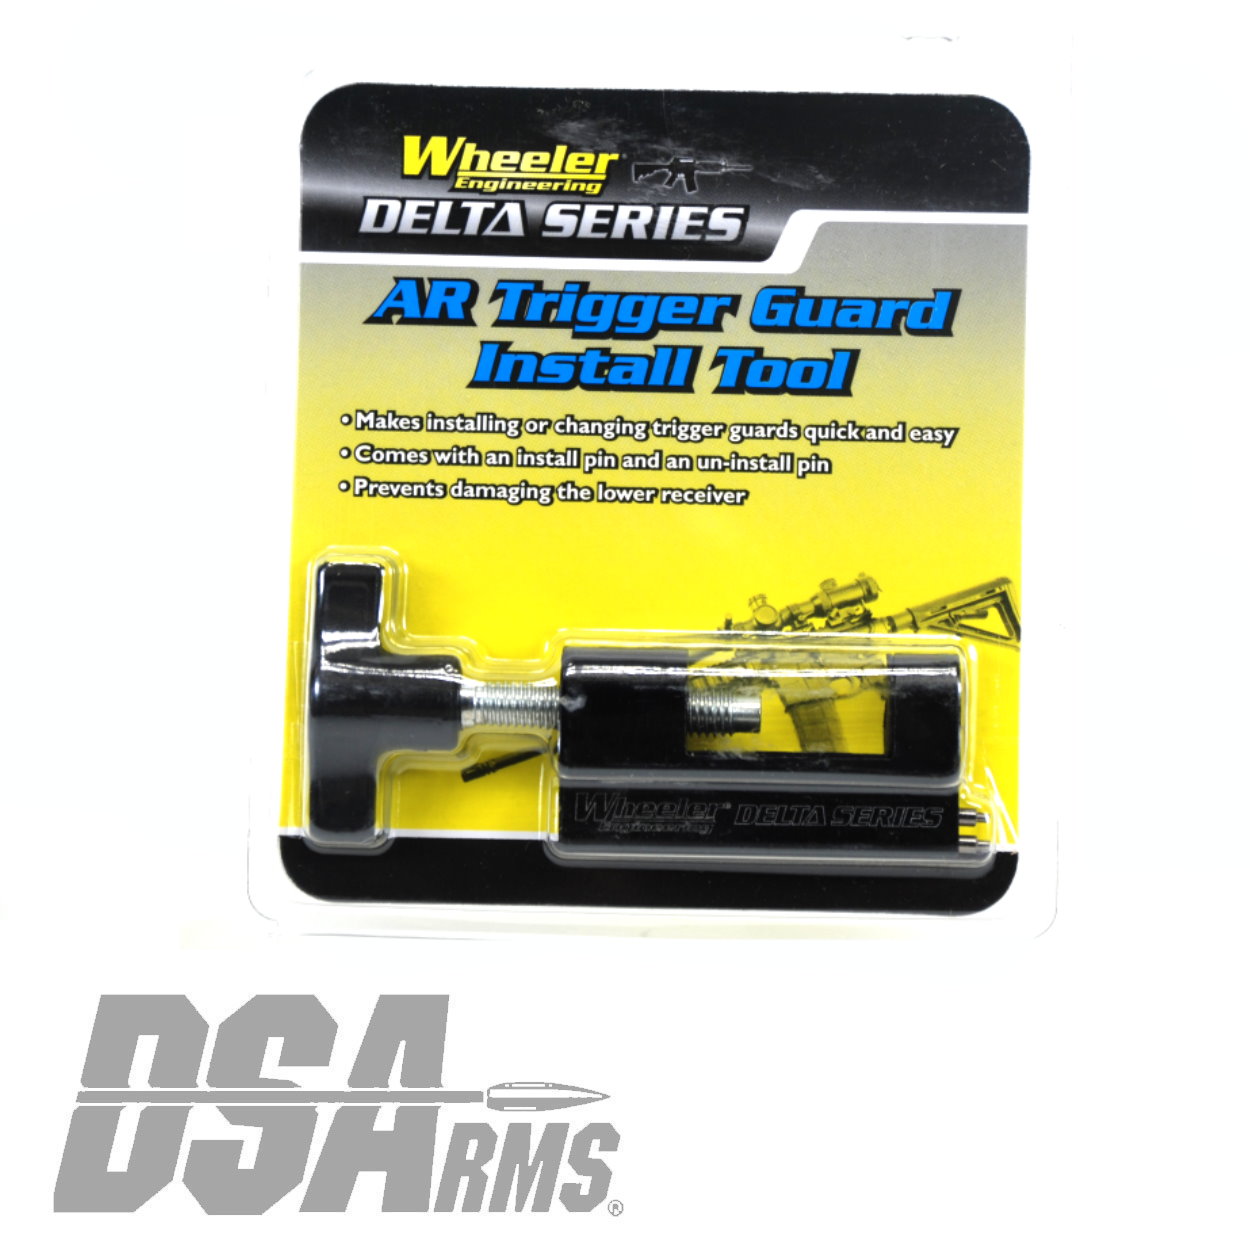 Wheeler 710907 Delta Series AR Trigger Guard Install Tool 